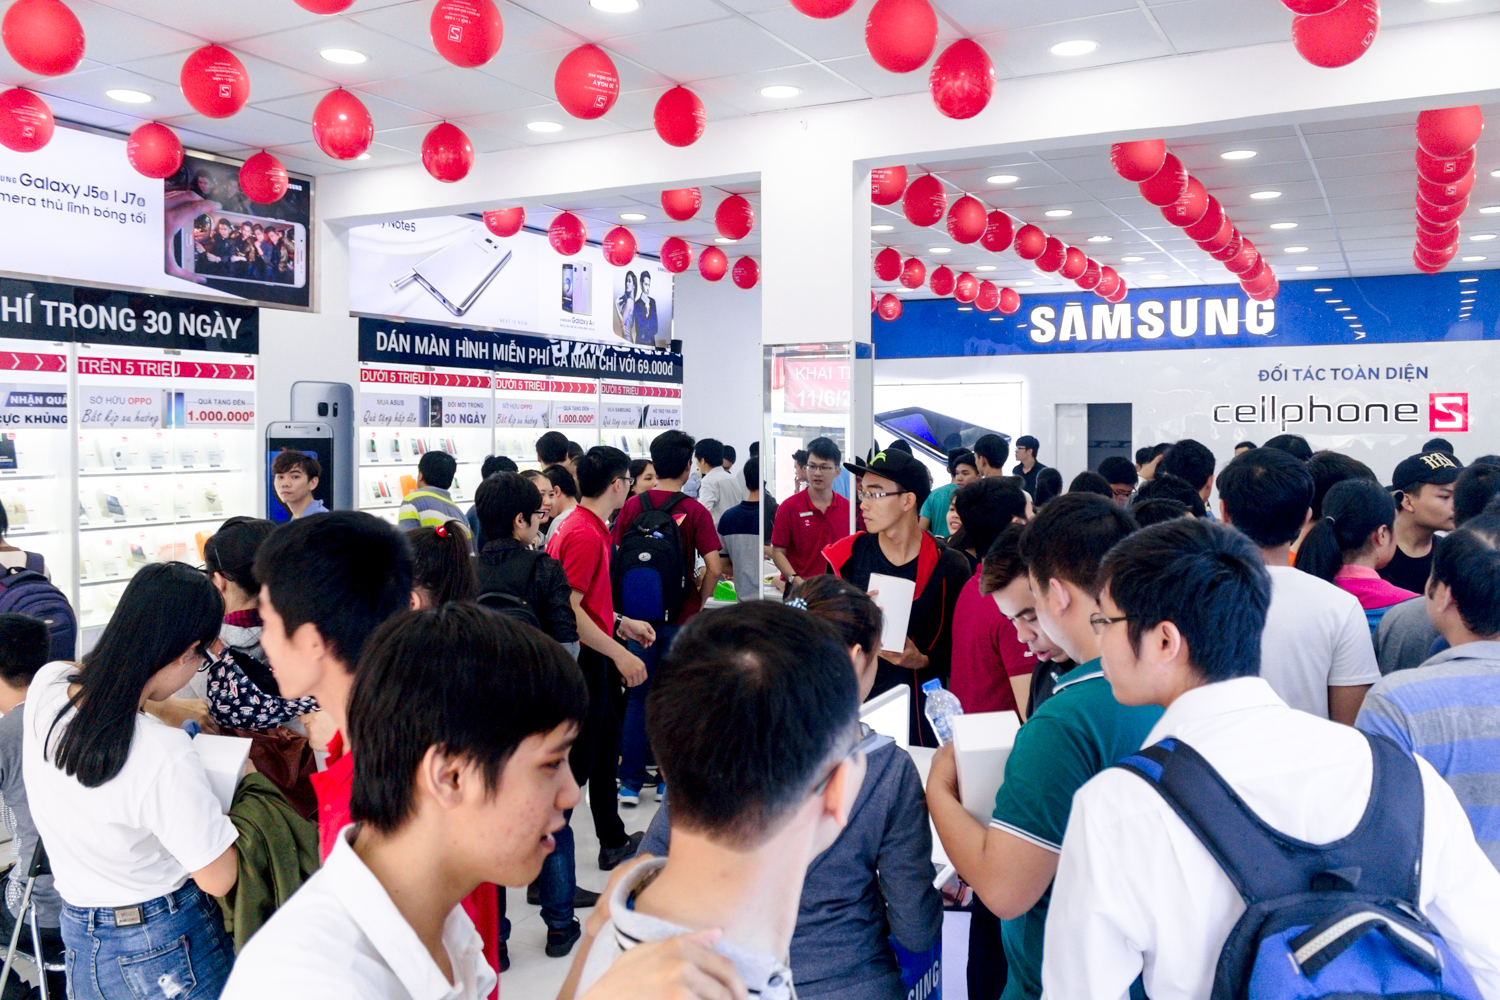 Danh sách cửa hàng CellphoneS tại Hà Nội và Tp. Hồ Chí Minh